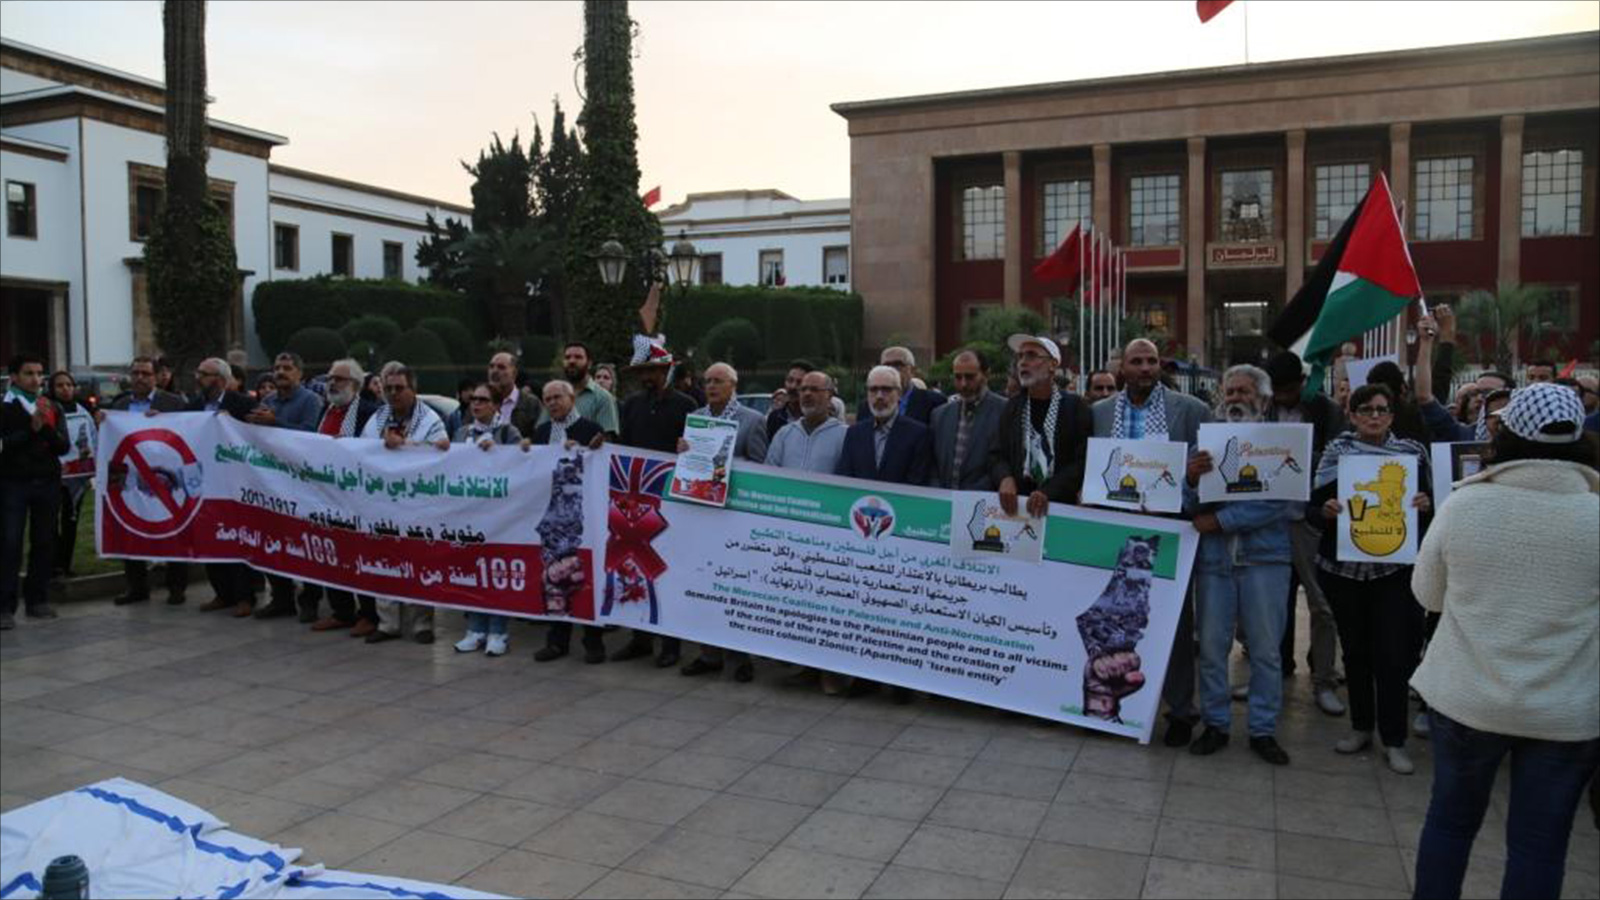 فعاليات تضامنية في المغرب مع فلسطين (الجزيرة-أرشيف)